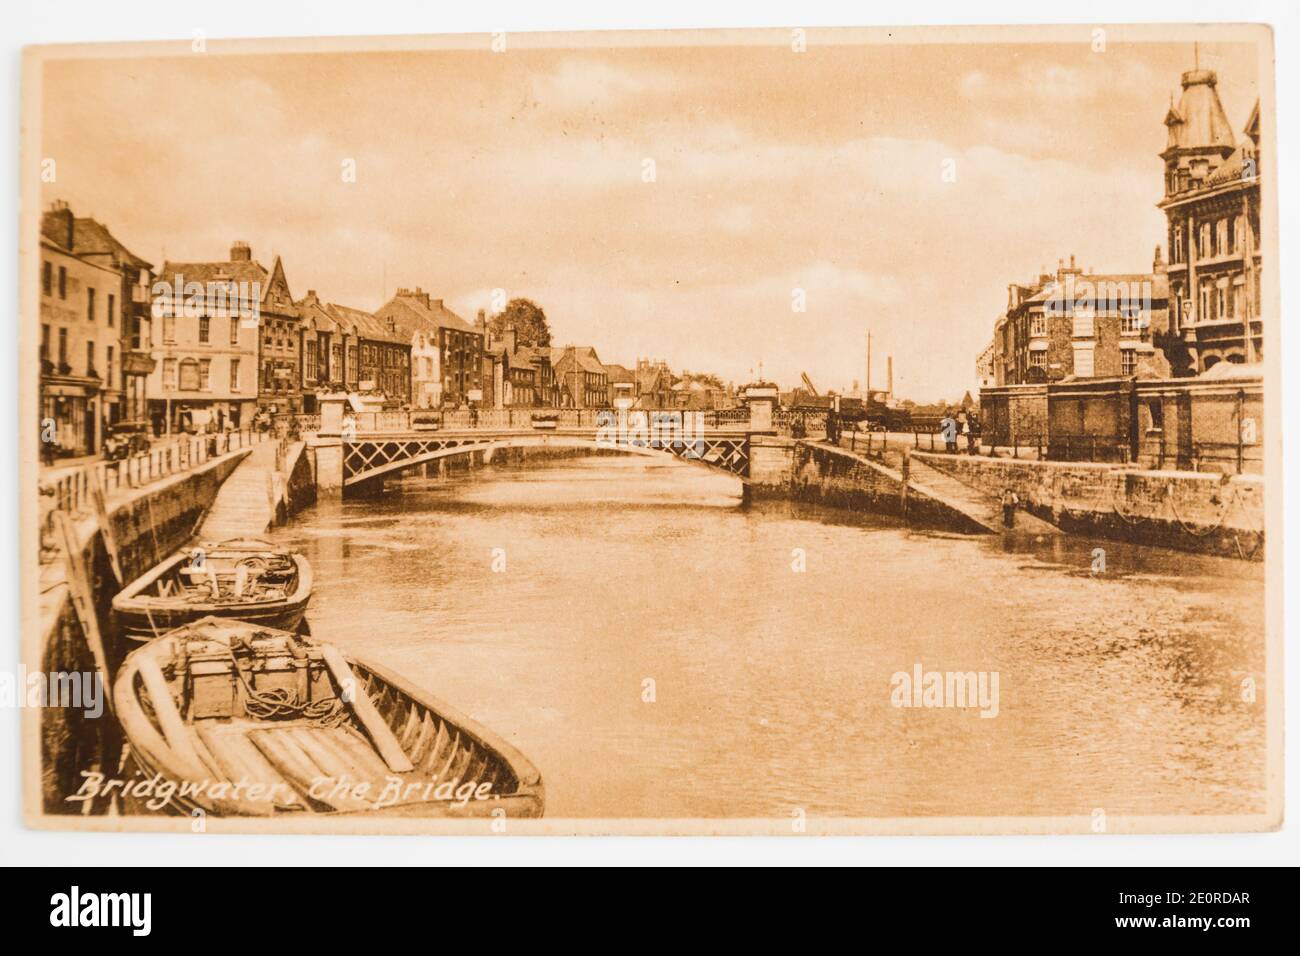 Alte Sepia Postkarte der Brücke über den Fluss Parrett, Bridgwater, Somerset in den 1940er Jahren. Stockfoto